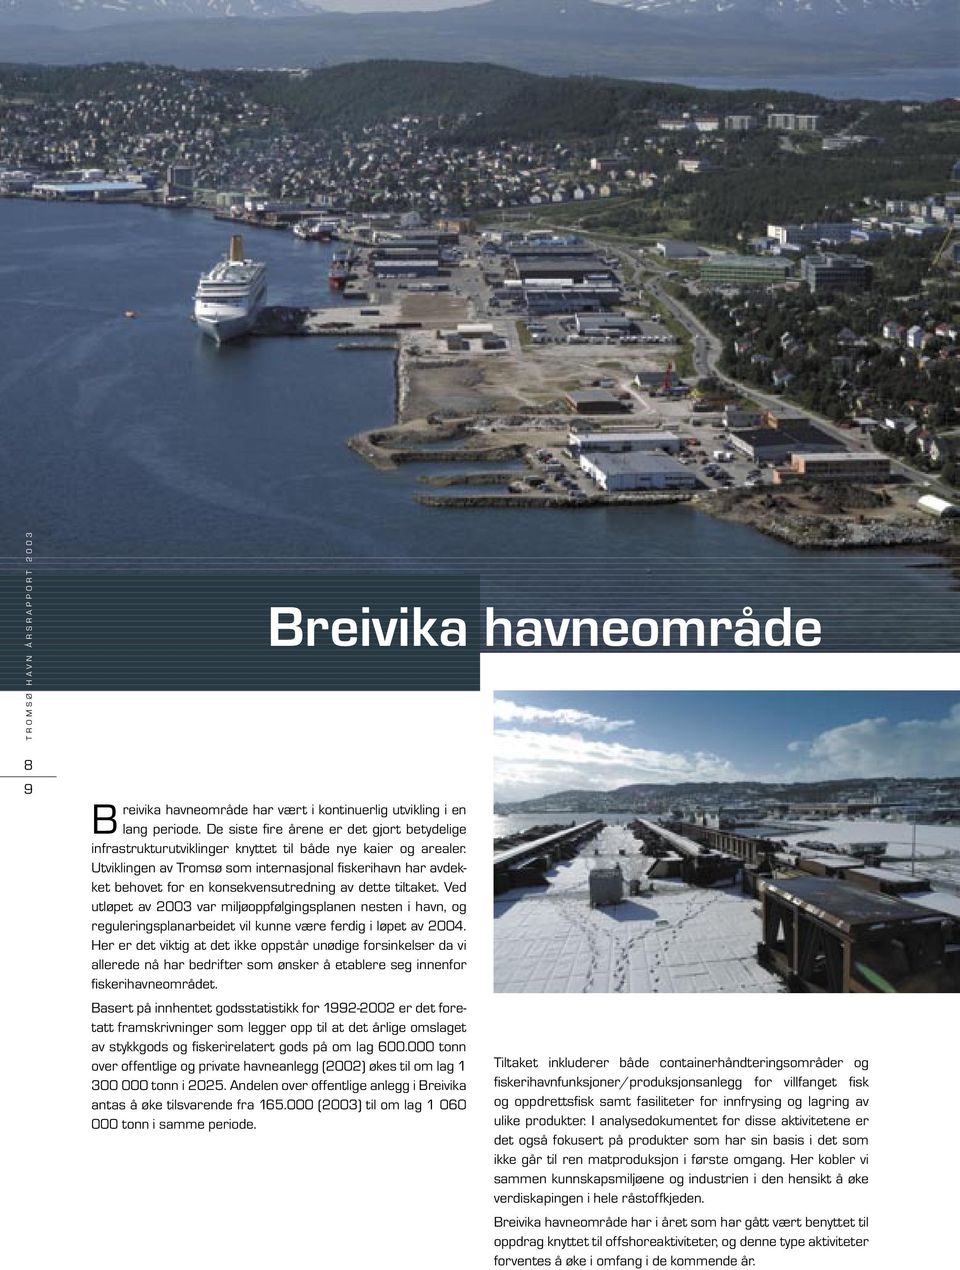 Utviklingen av Tromsø som internasjonal fi skerihavn har avdekket behovet for en konsekvensutredning av dette tiltaket.